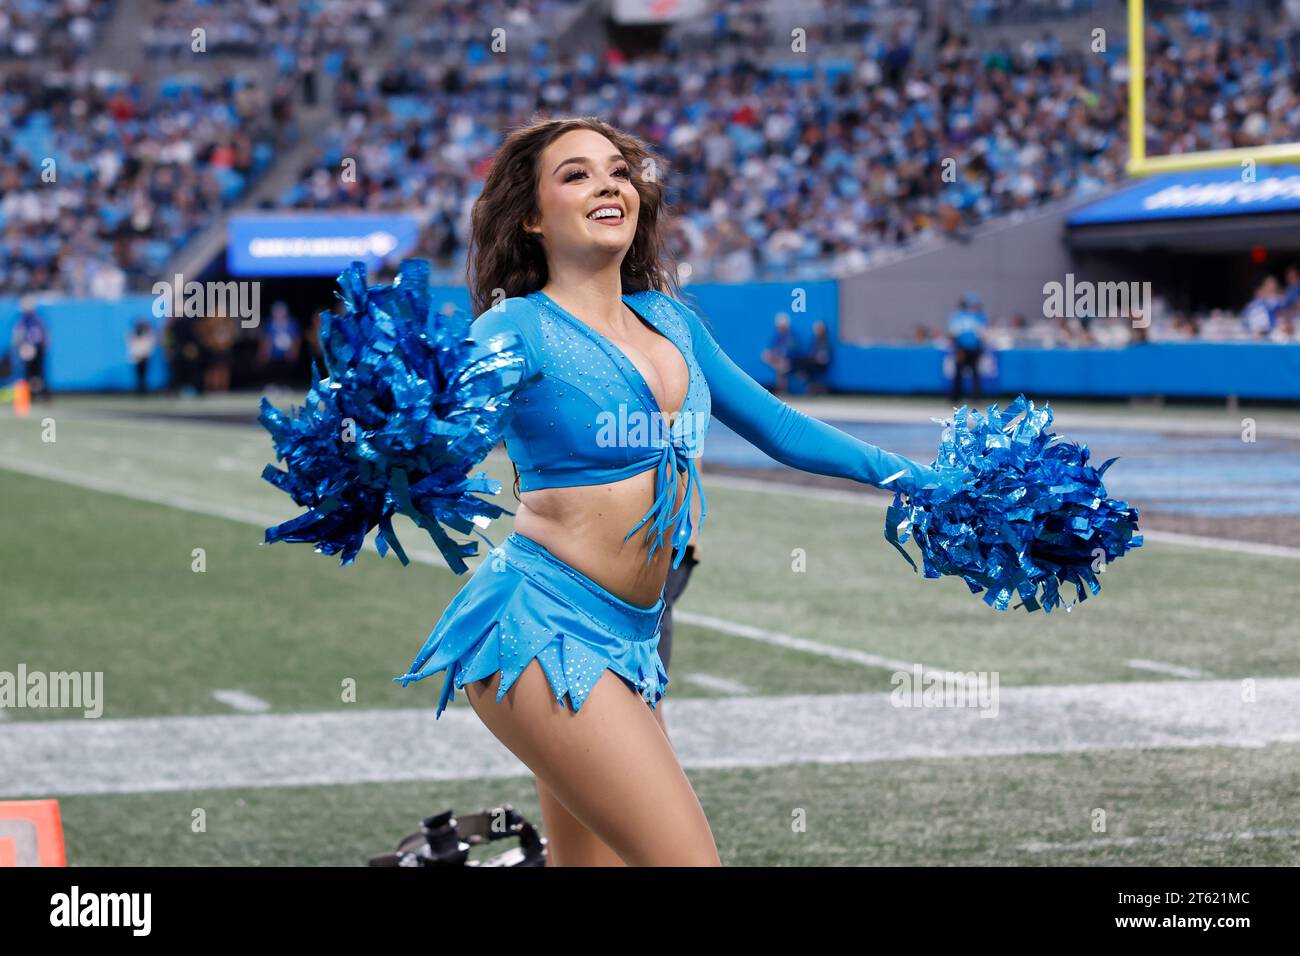 Charlotte, NC, USA: Uno dei membri delle cheerleader dei Carolina Panthers che intrattiene i tifosi durante una partita della NFL contro gli Indianapolis Colts A. Foto Stock